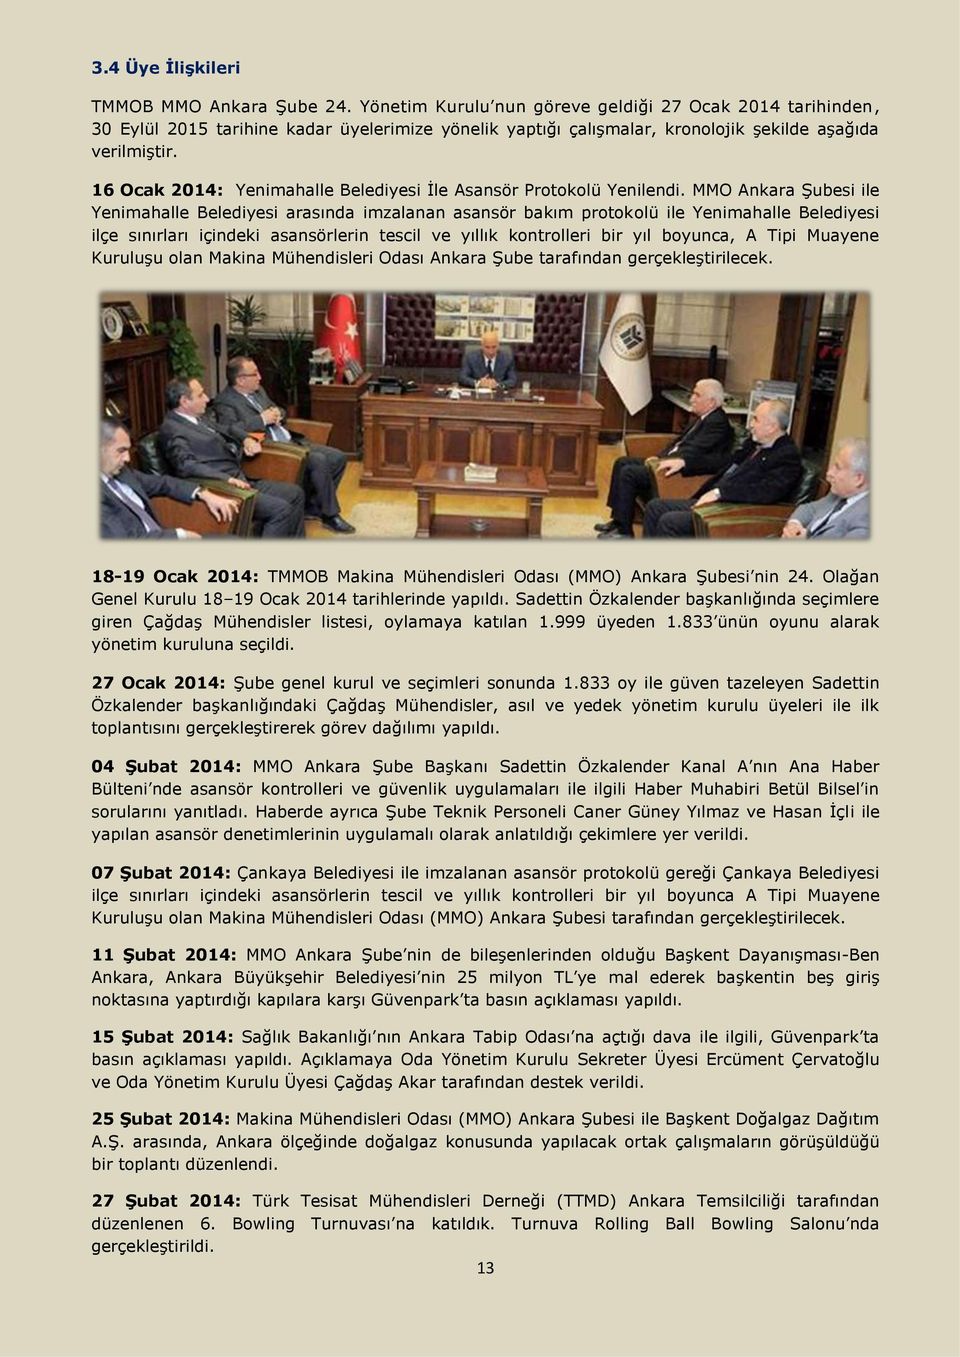 16 Ocak 2014: Yenimahalle Belediyesi İle Asansör Protokolü Yenilendi.